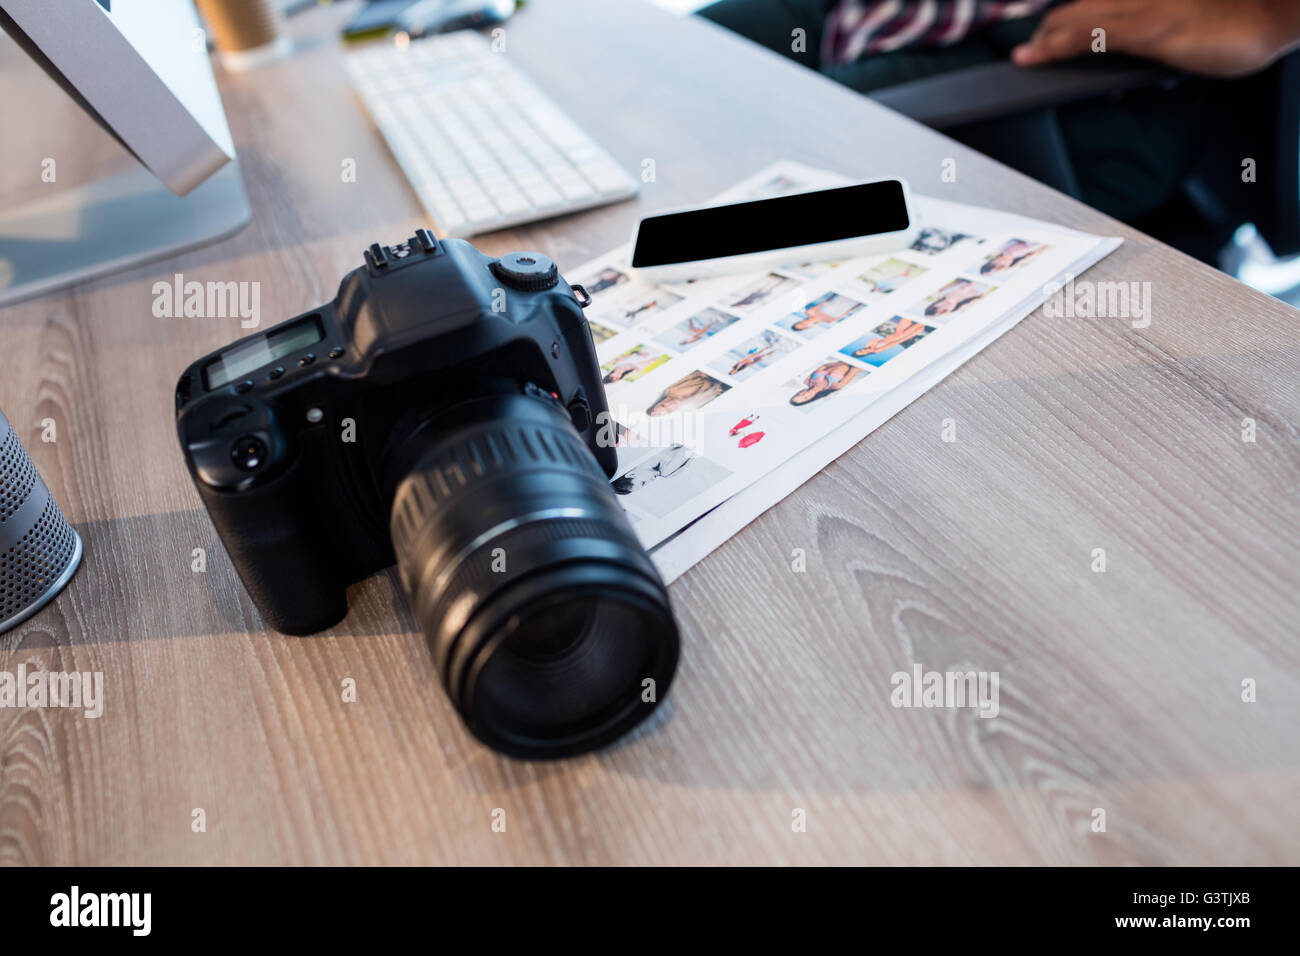 Fotocamera digitale e paperworks su una scrivania in ufficio Foto Stock